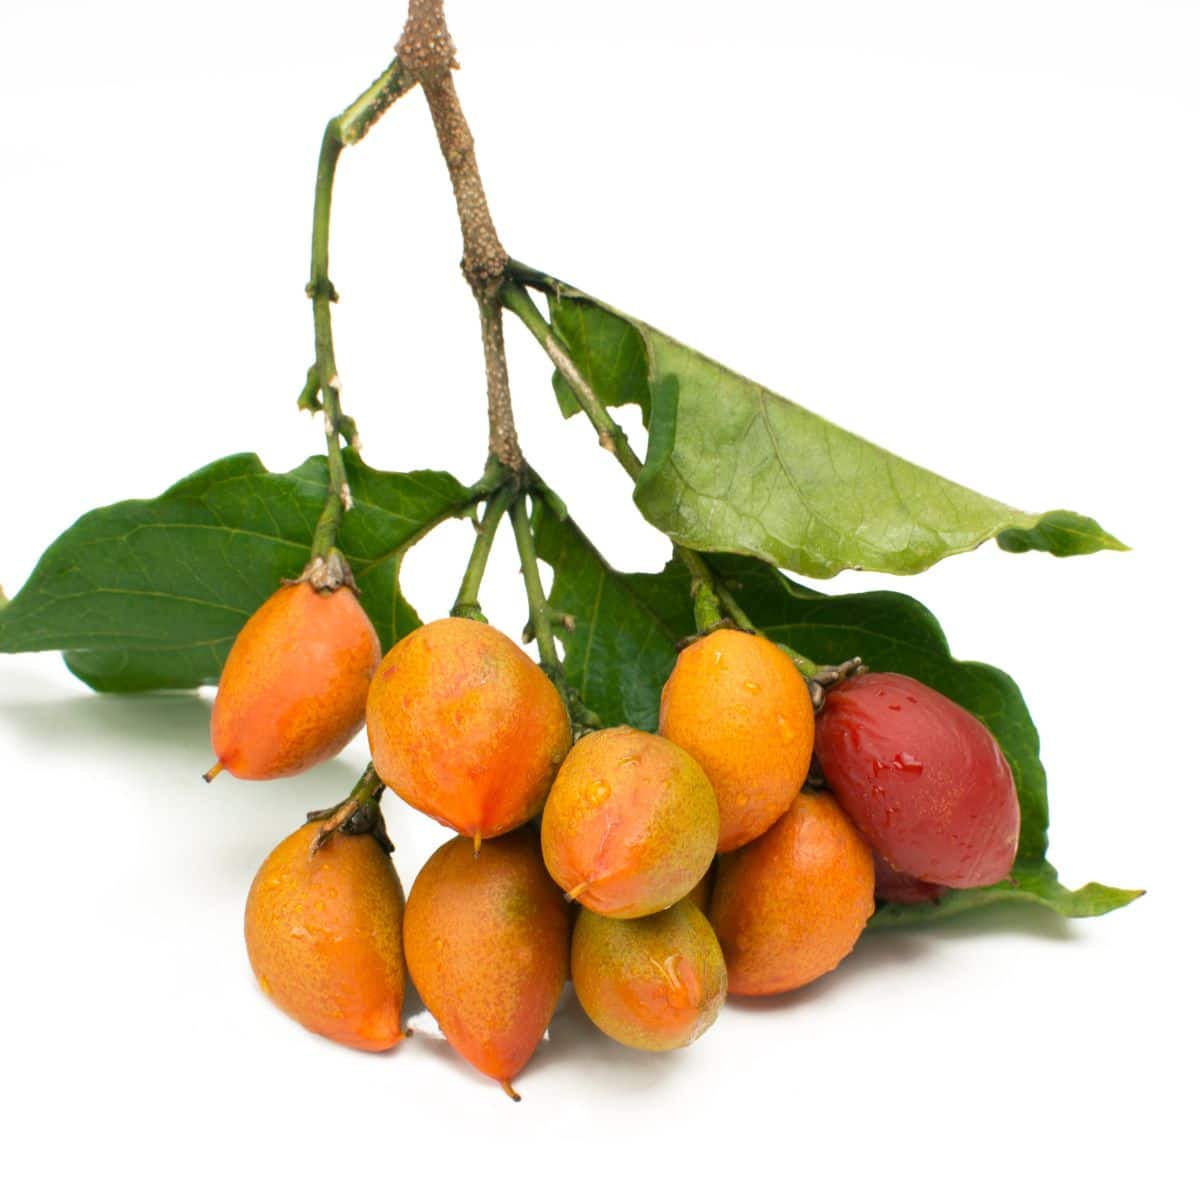 Usuma fruit on a white background.